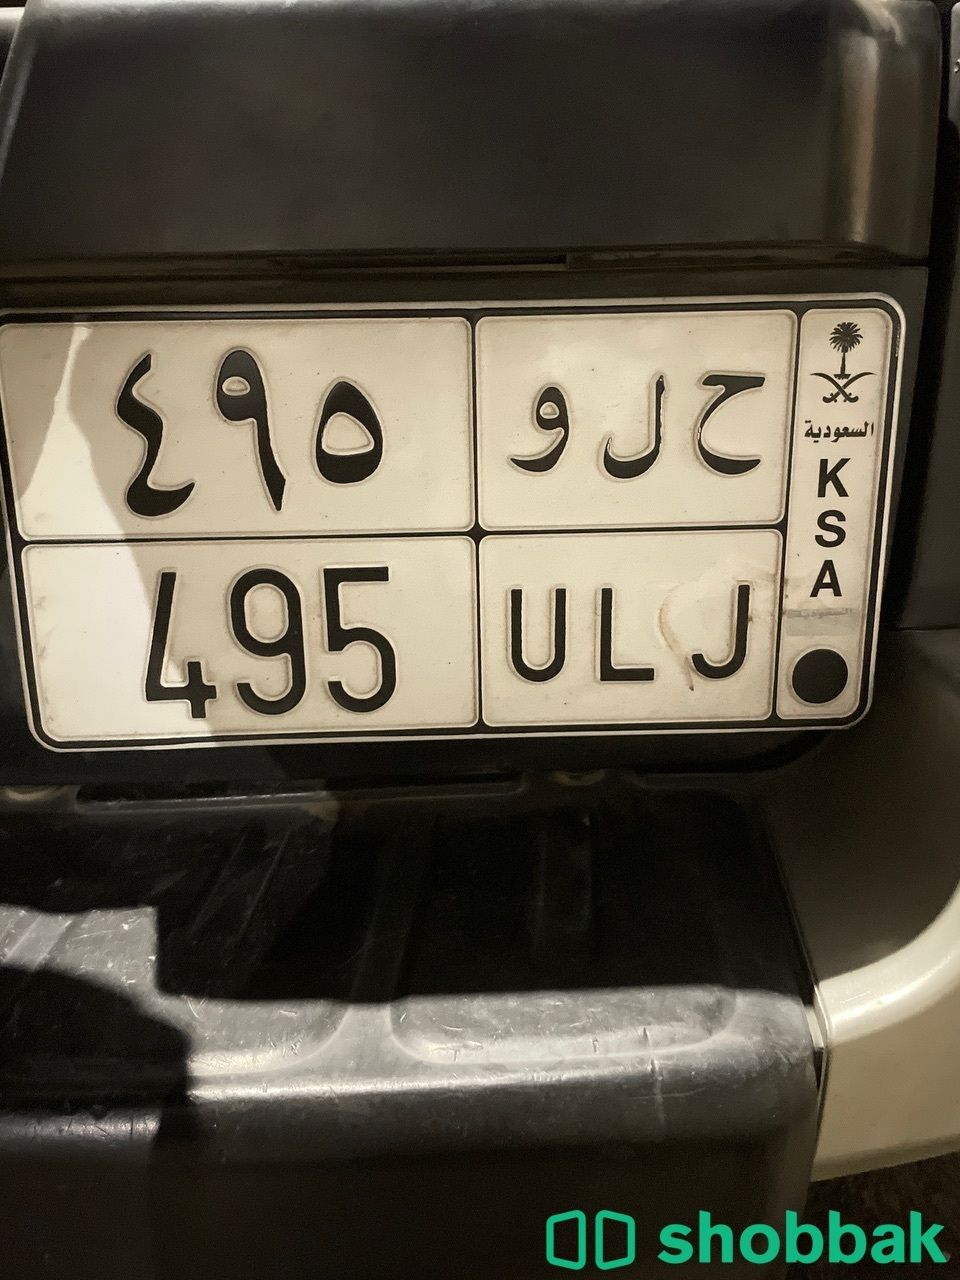 لوحة سيارة للبيع Shobbak Saudi Arabia